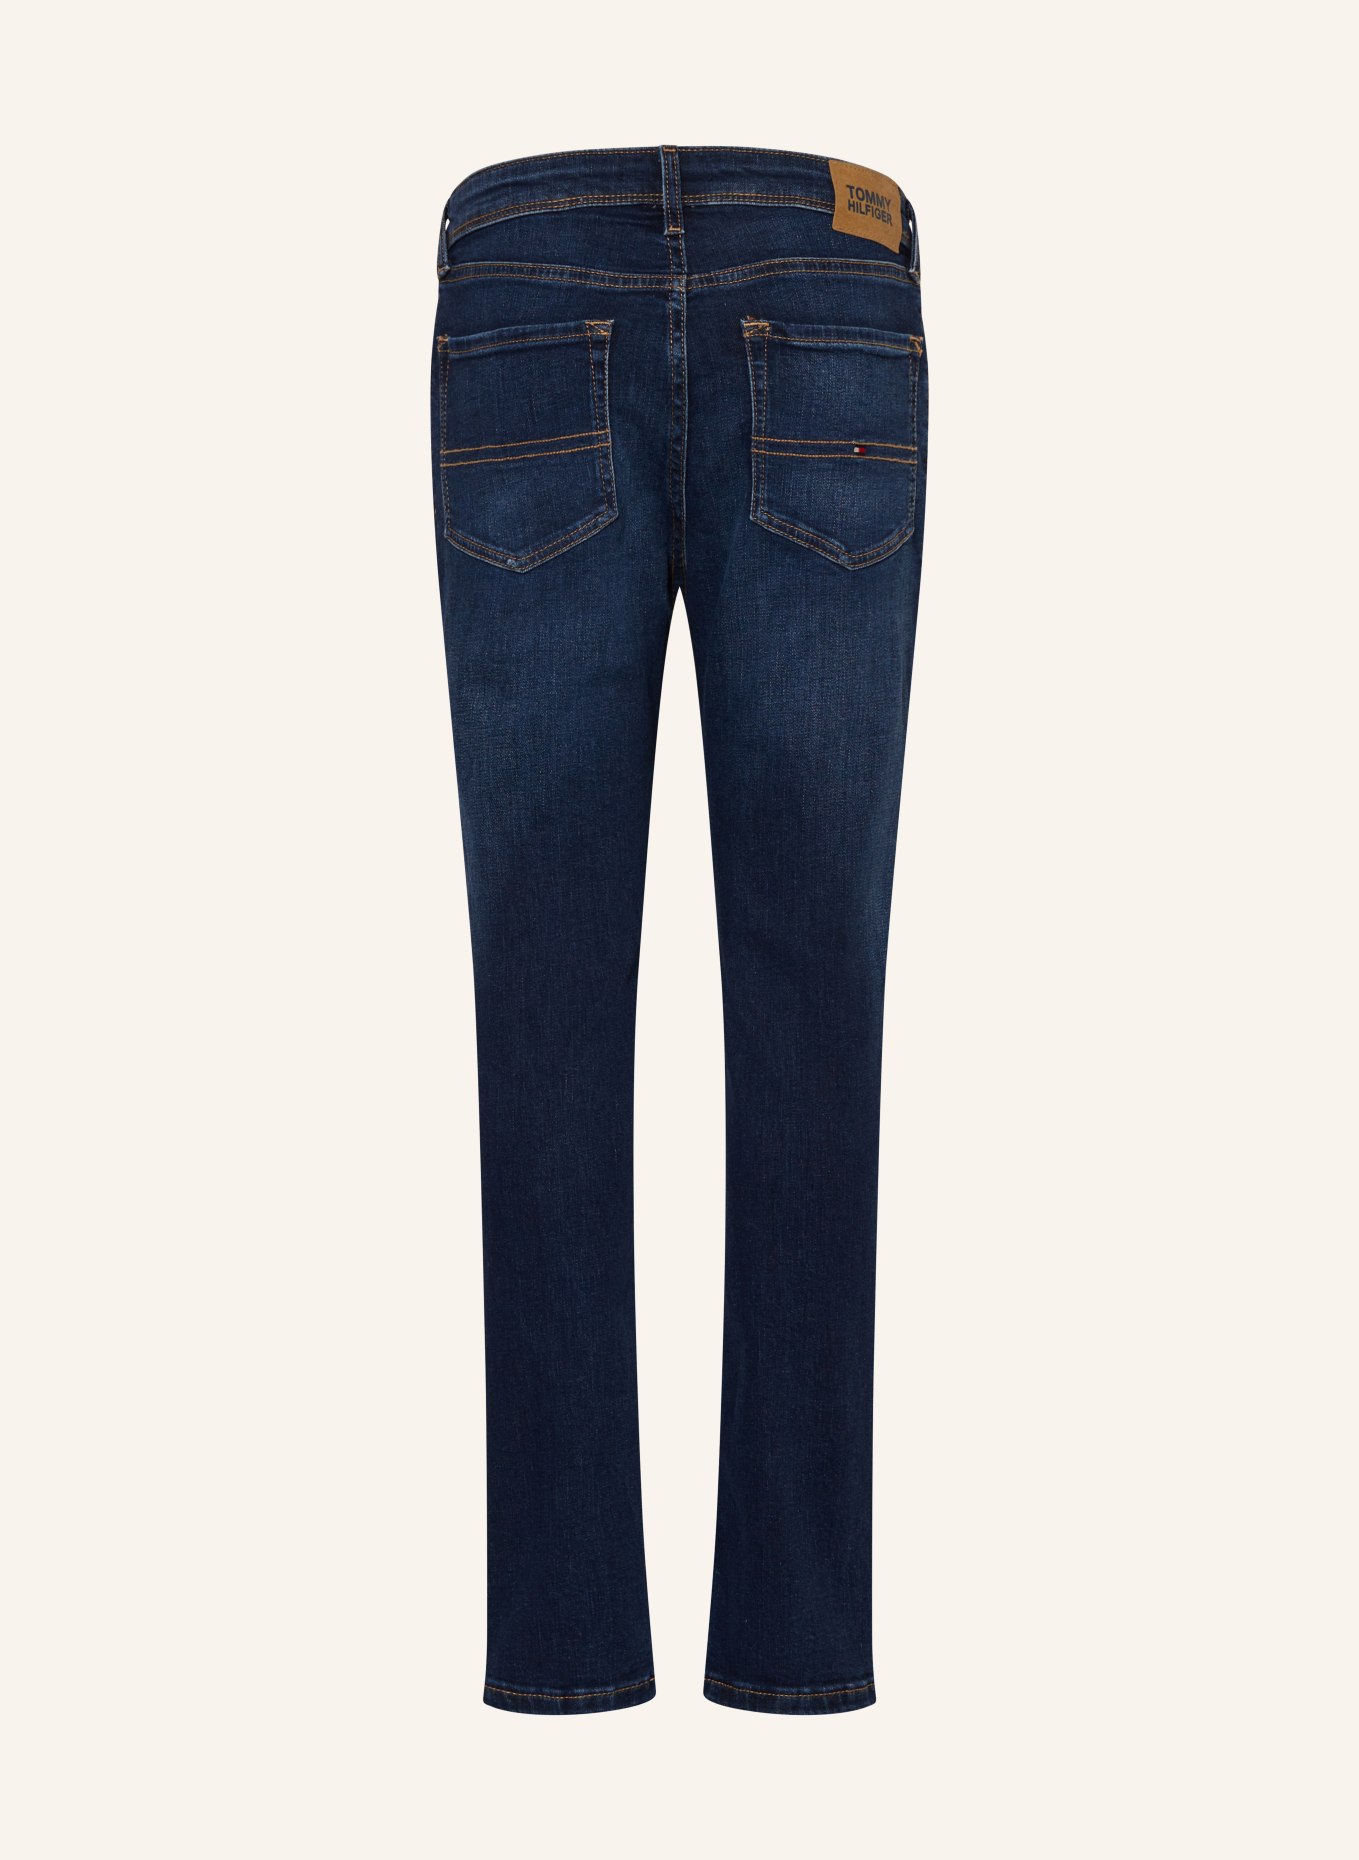 TOMMY HILFIGER Jeans Slim Fit, Farbe: 1BN Darkused (Bild 2)